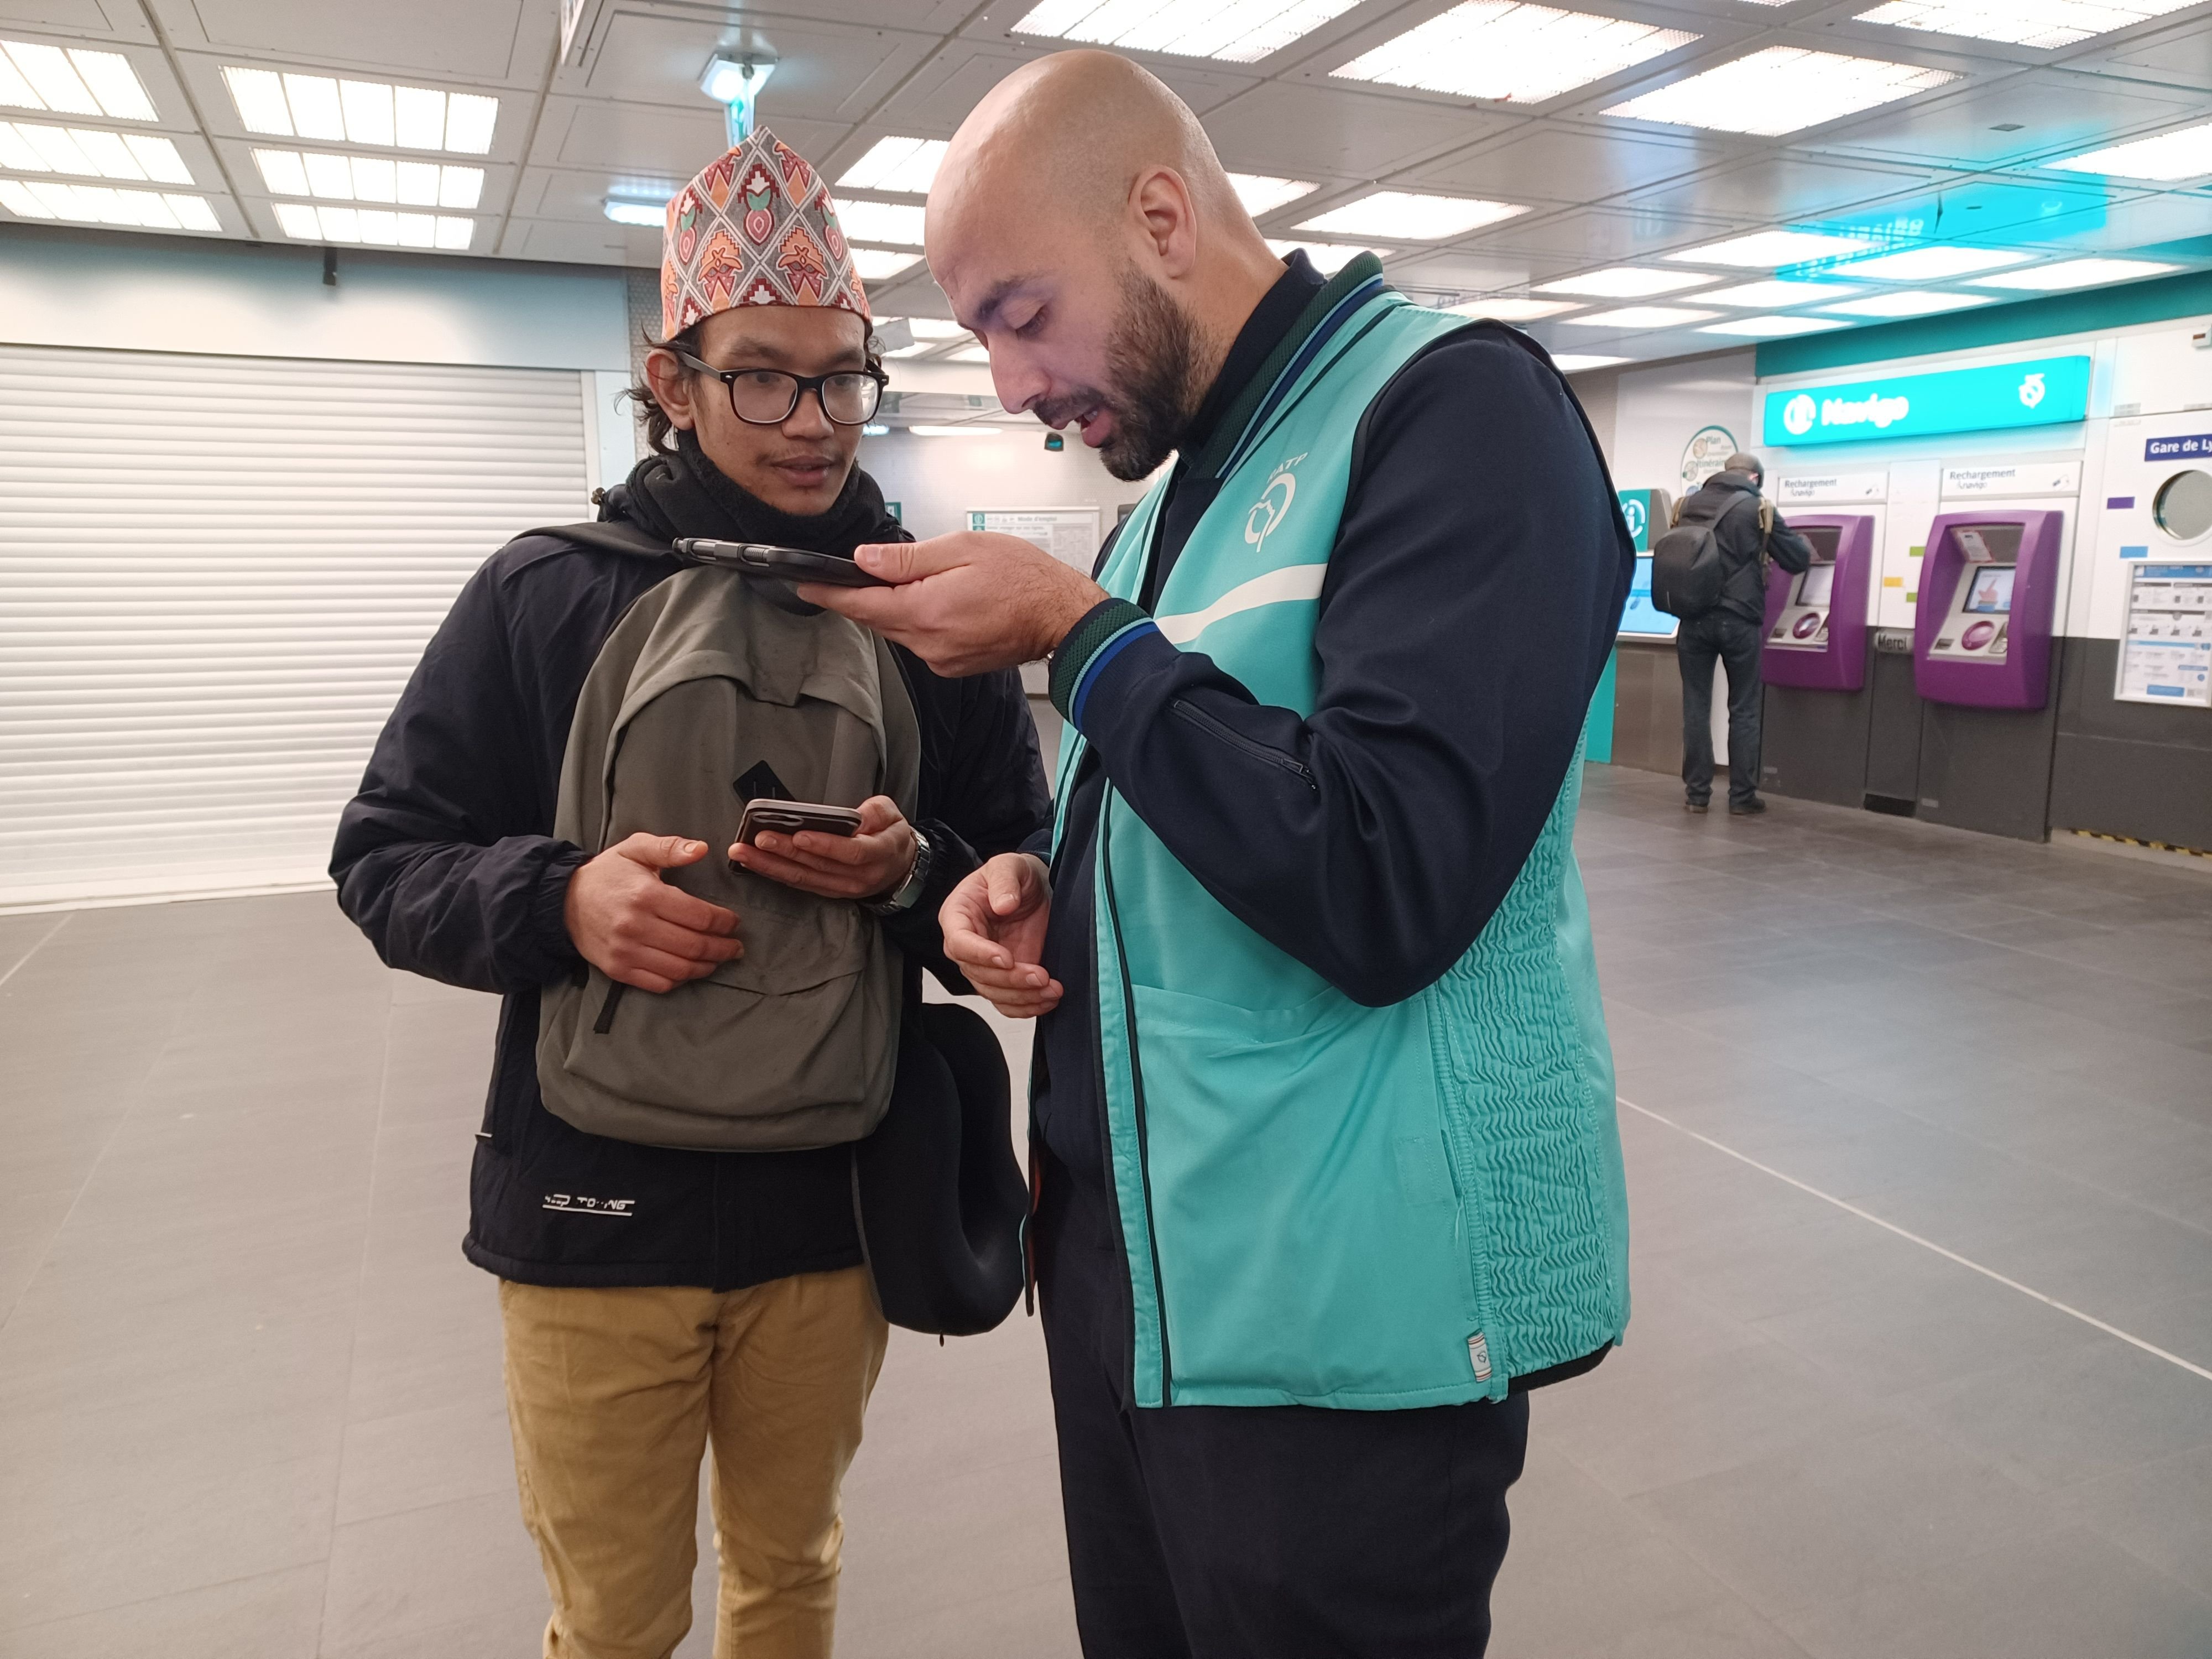 Paris, station Gare-de-Lyon, le 27 novembre. Grâce à un nouvel outil de traduction installé sur leur tablette, les agents peuvent échanger plus facilement avec les touristes étrangers. LP/Jila Varoquier